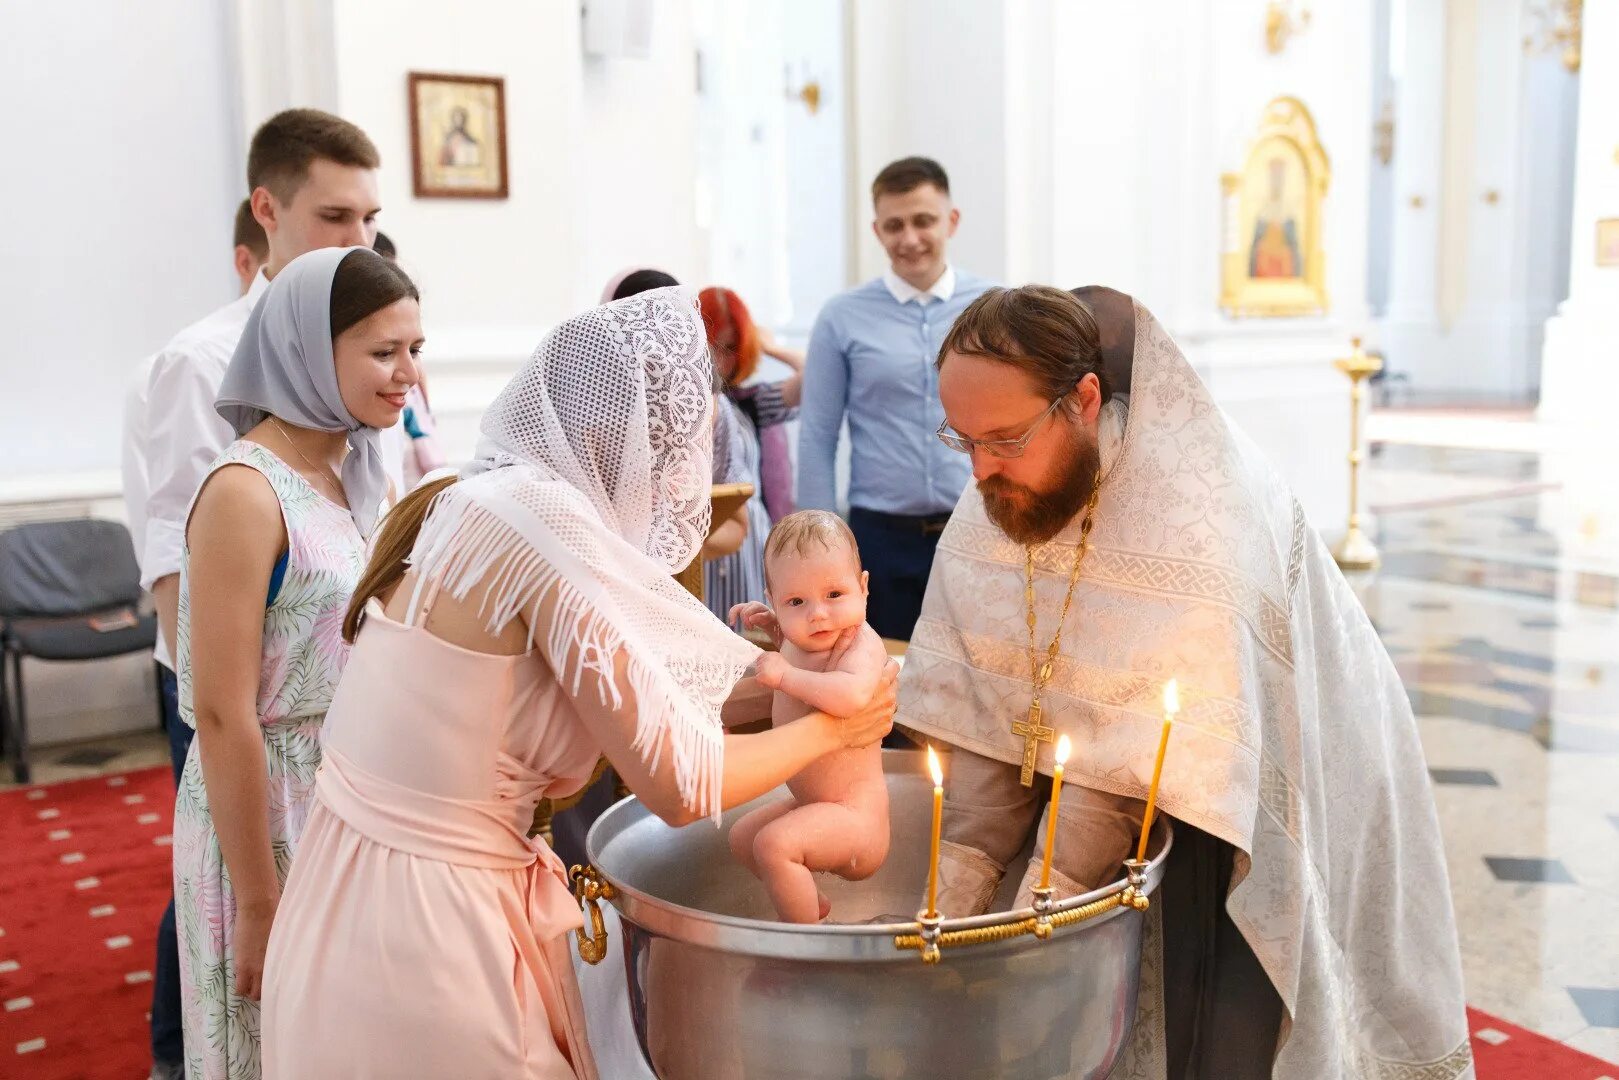 Что делает крестная во время крещения. Одежда для крещения взрослых. Одежда на крестины взрослым. Одежда на крещение для женщины. Одежда для крещения взрослой женщины.